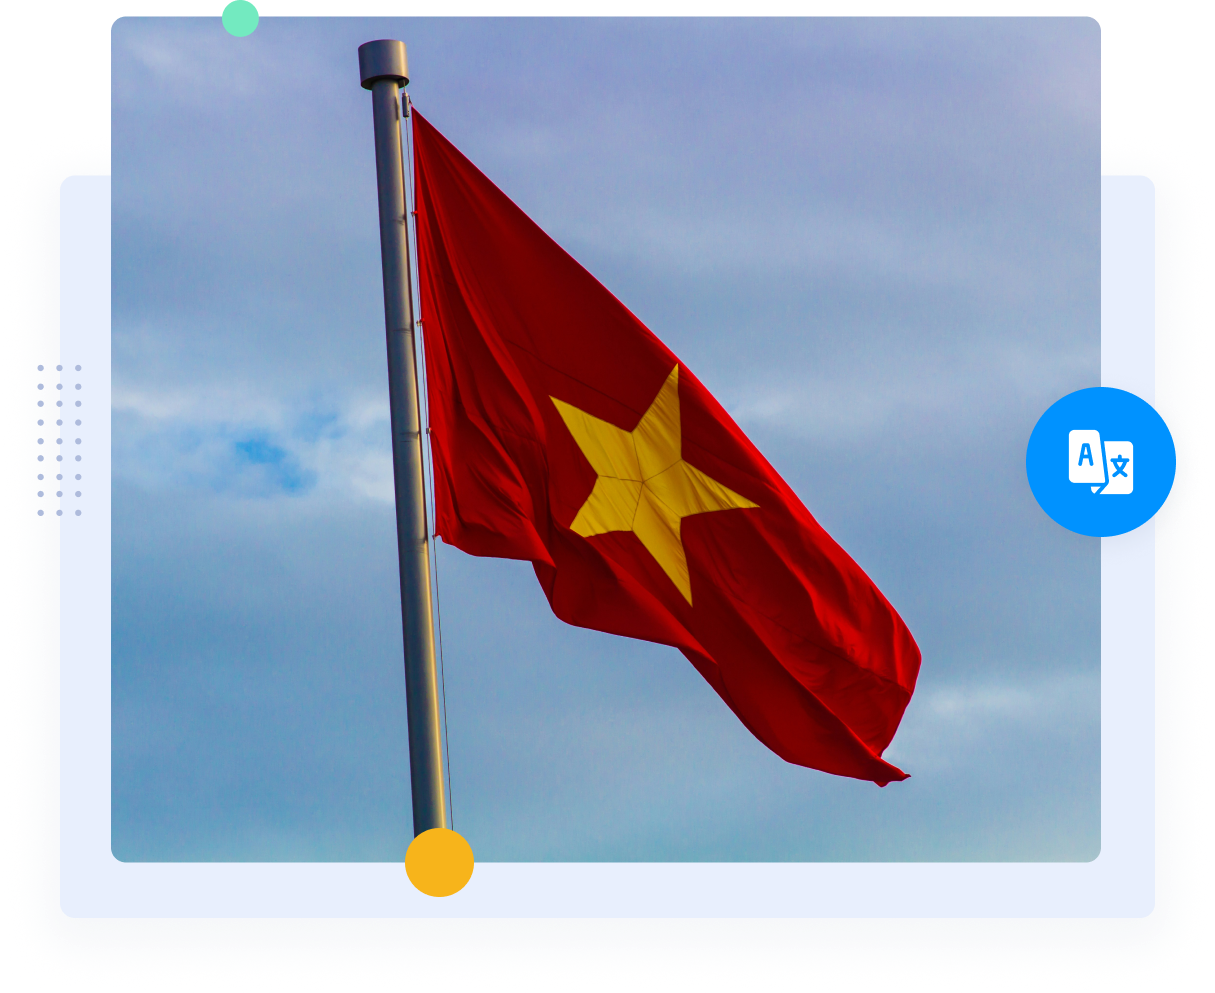 العلم الأحمر لفيتنام مع نجمة صفراء تمثل الترجمات الفيتنامية الإنجليزية.